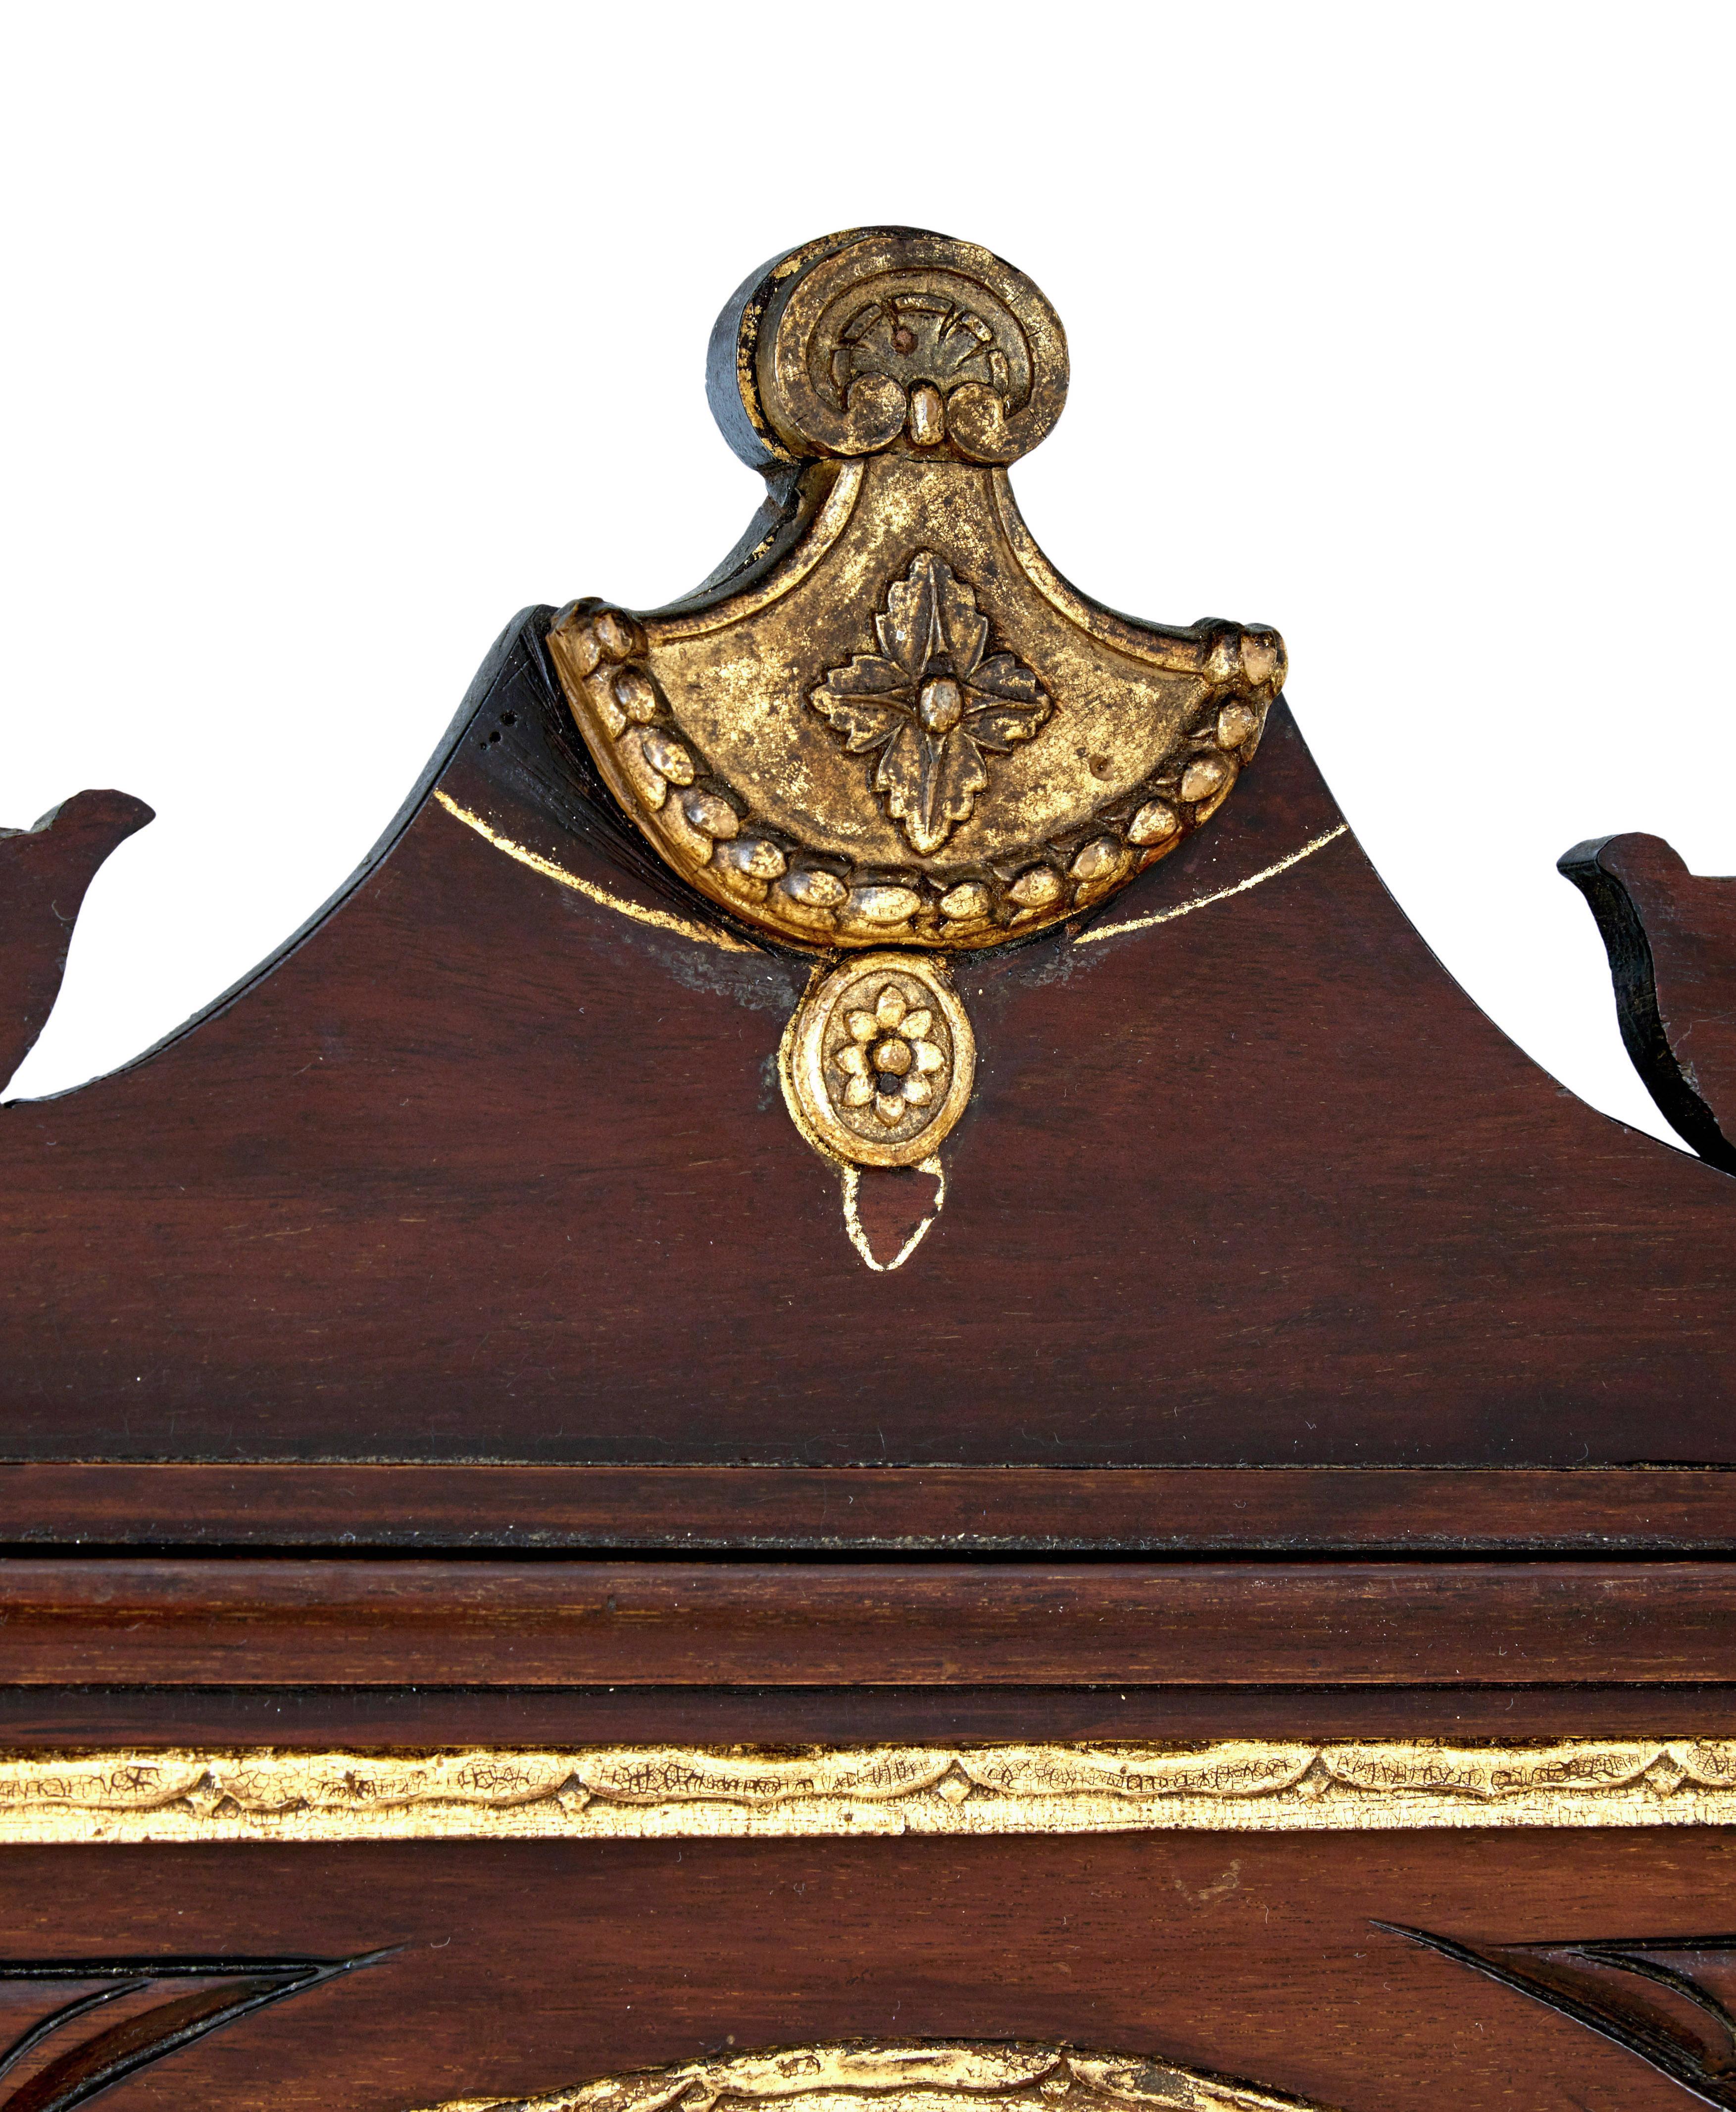 Magnifique miroir américain en noyer rouge vers 1890.  Renouveau du Sheraton.

Cadre extérieur orné, avec décoration dorée sur le dessus et éventail en bois satiné incrusté sur le dessous.  Miroir ovale avec un engobe doré et des éventails sculptés